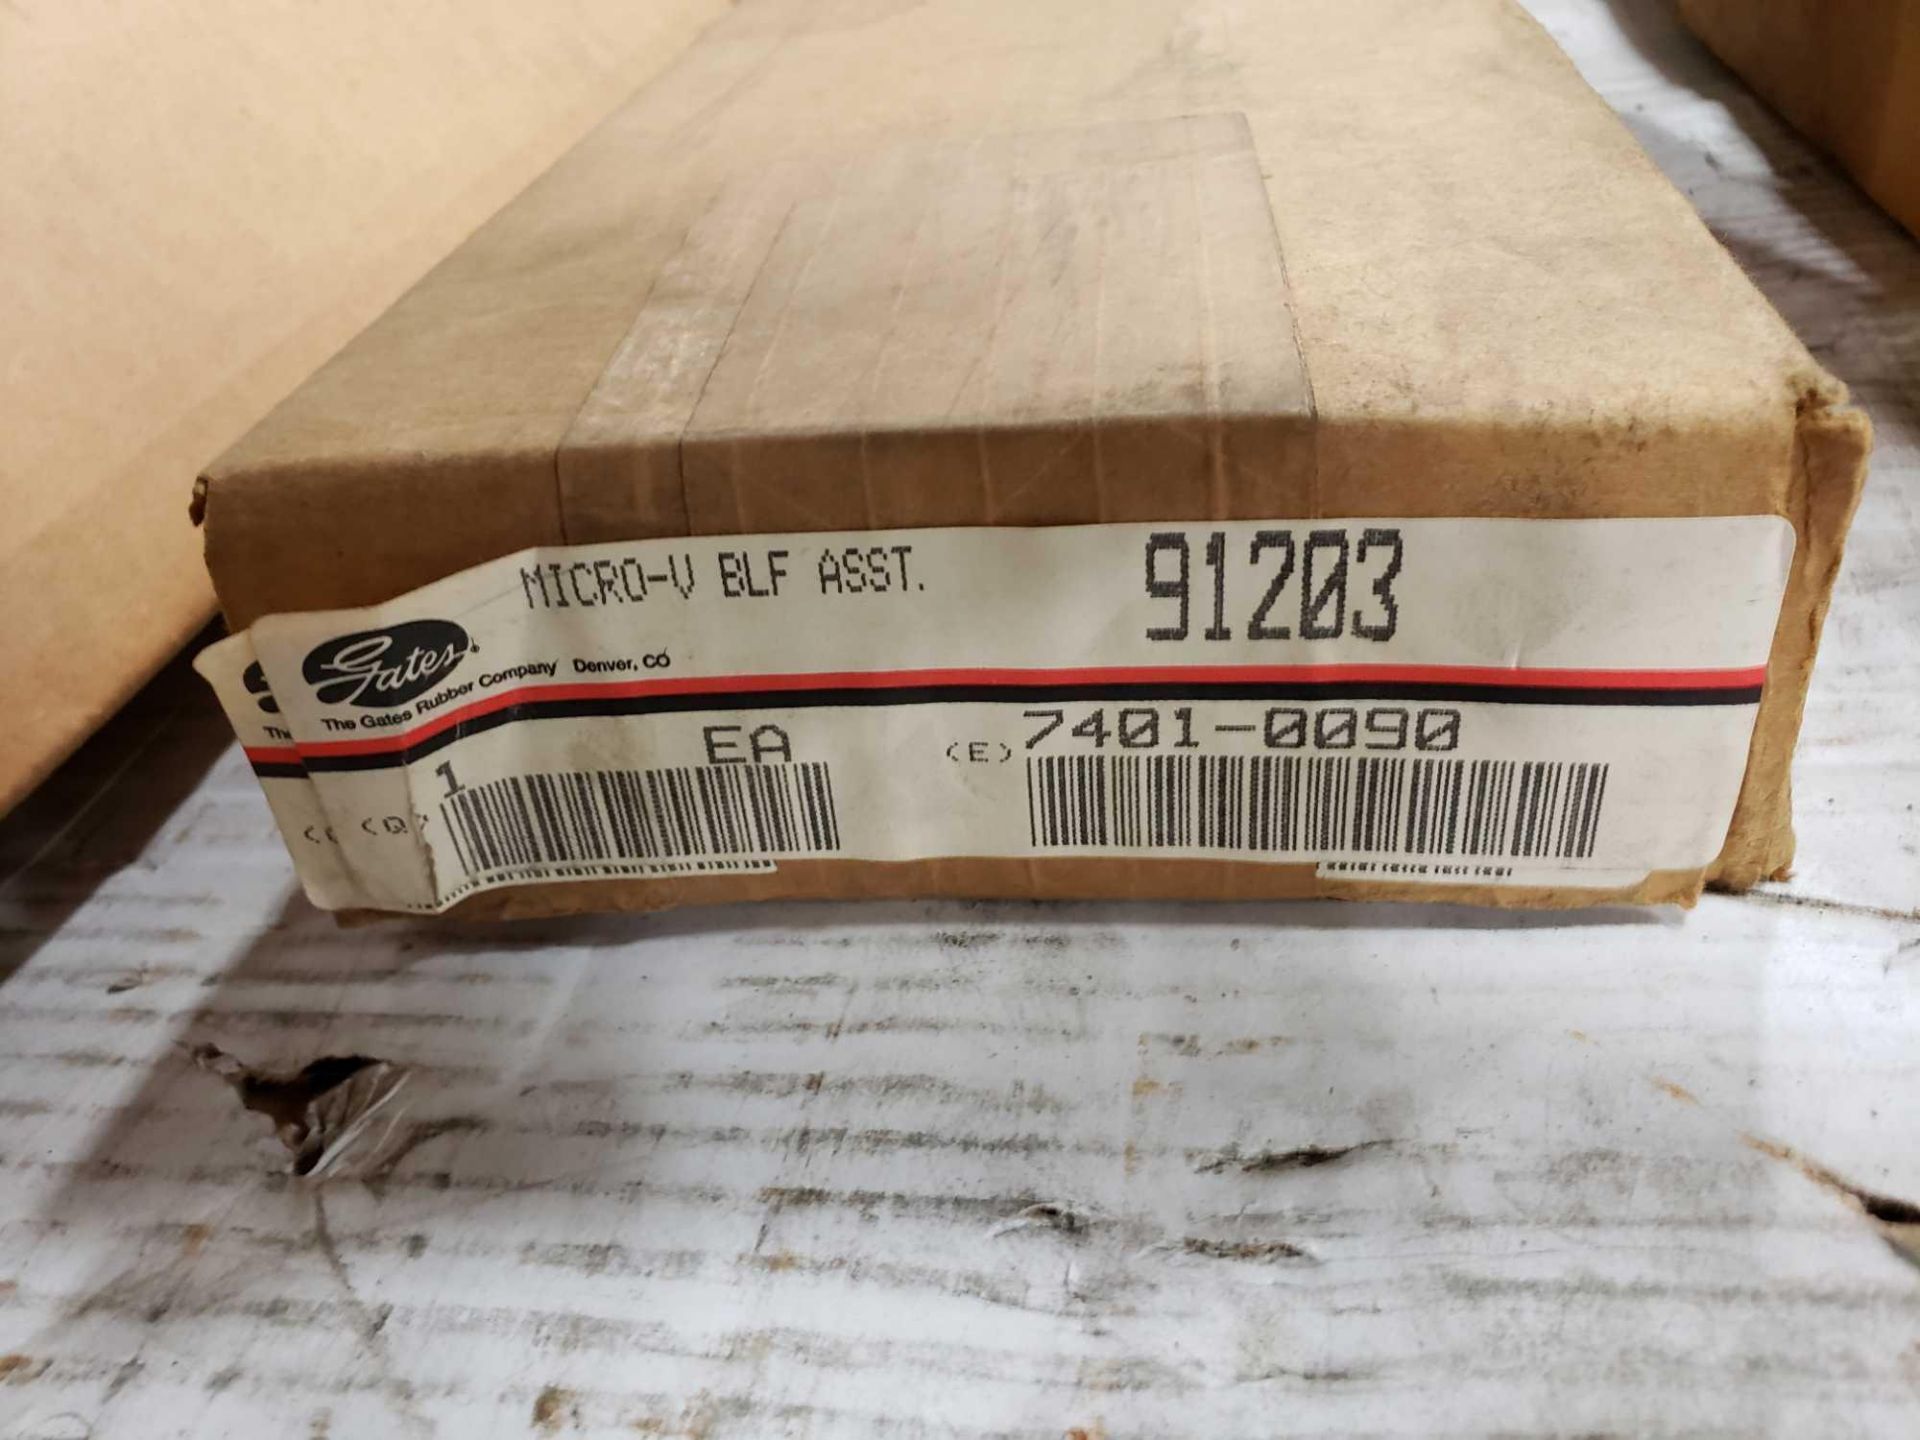 Gates model 91203 belt finder sizer. New in box. - Image 2 of 4